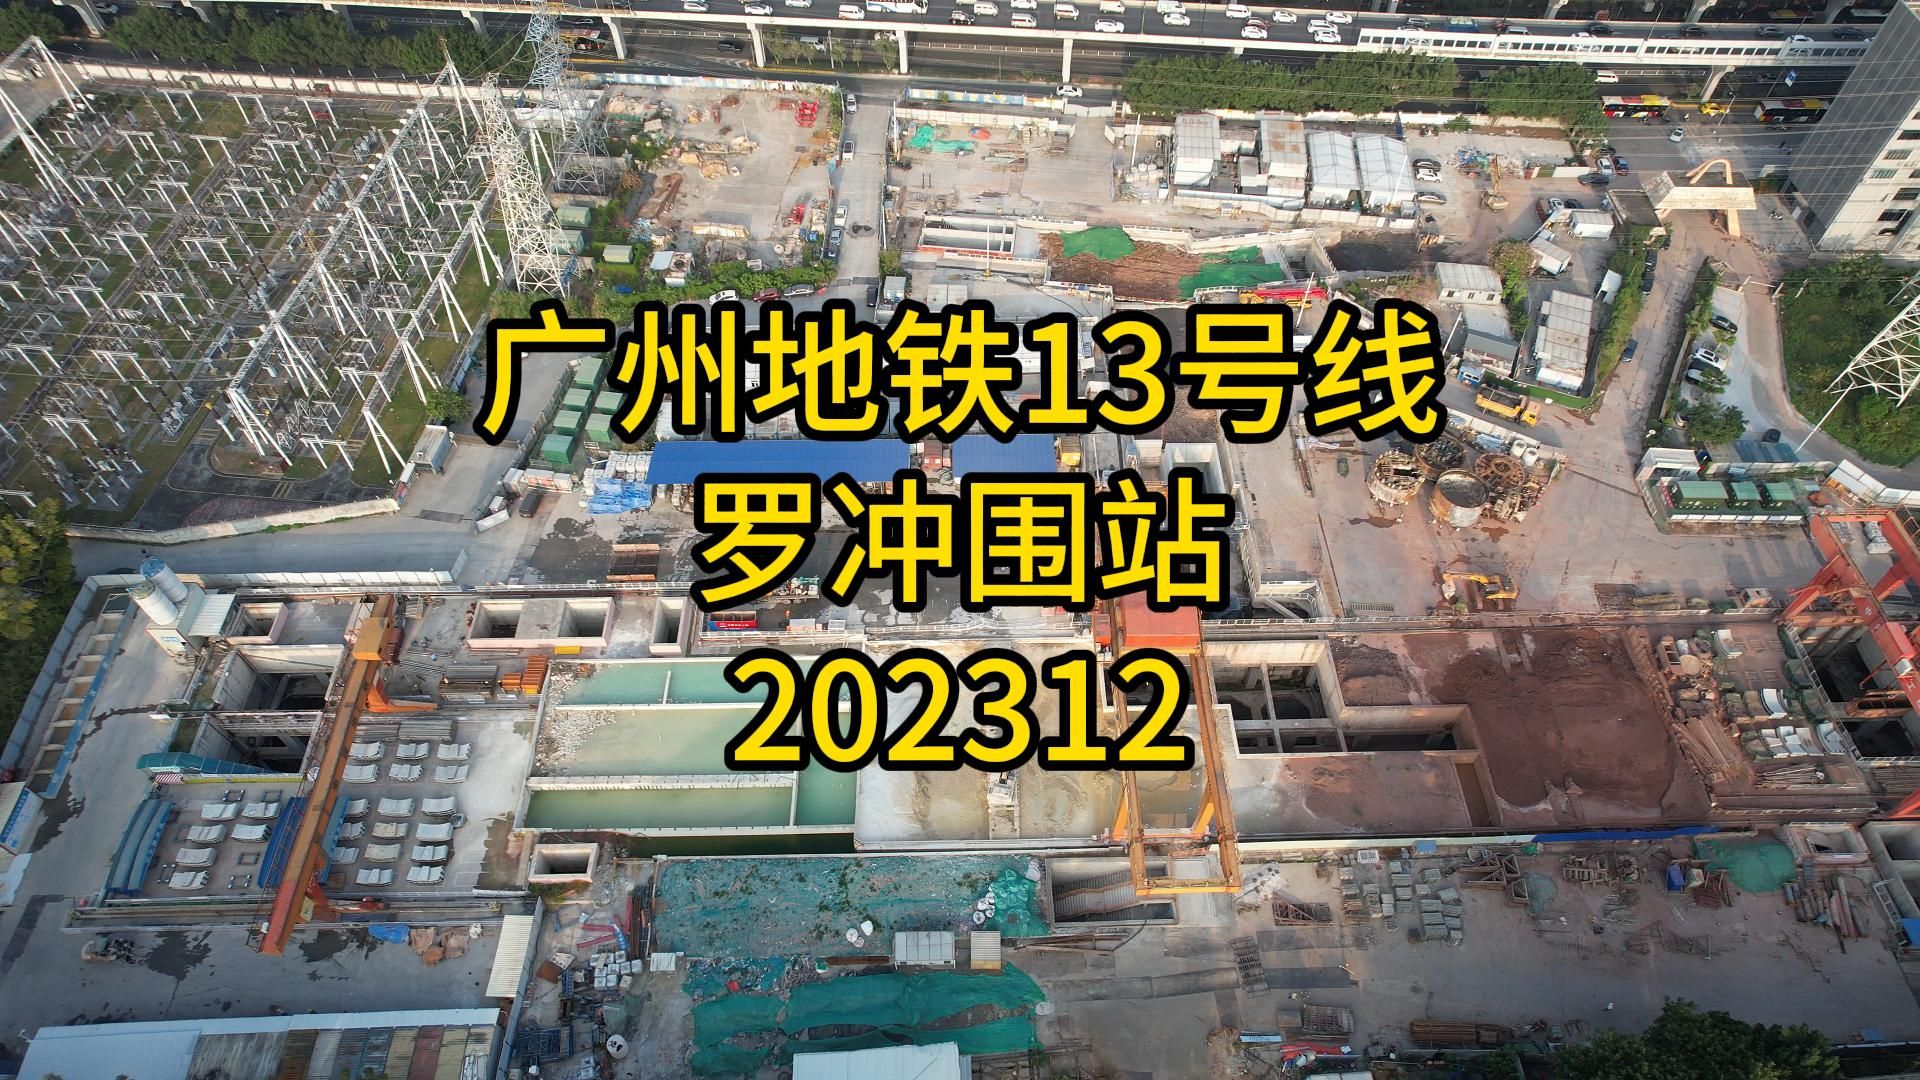 广州地铁13号线罗冲围站202312